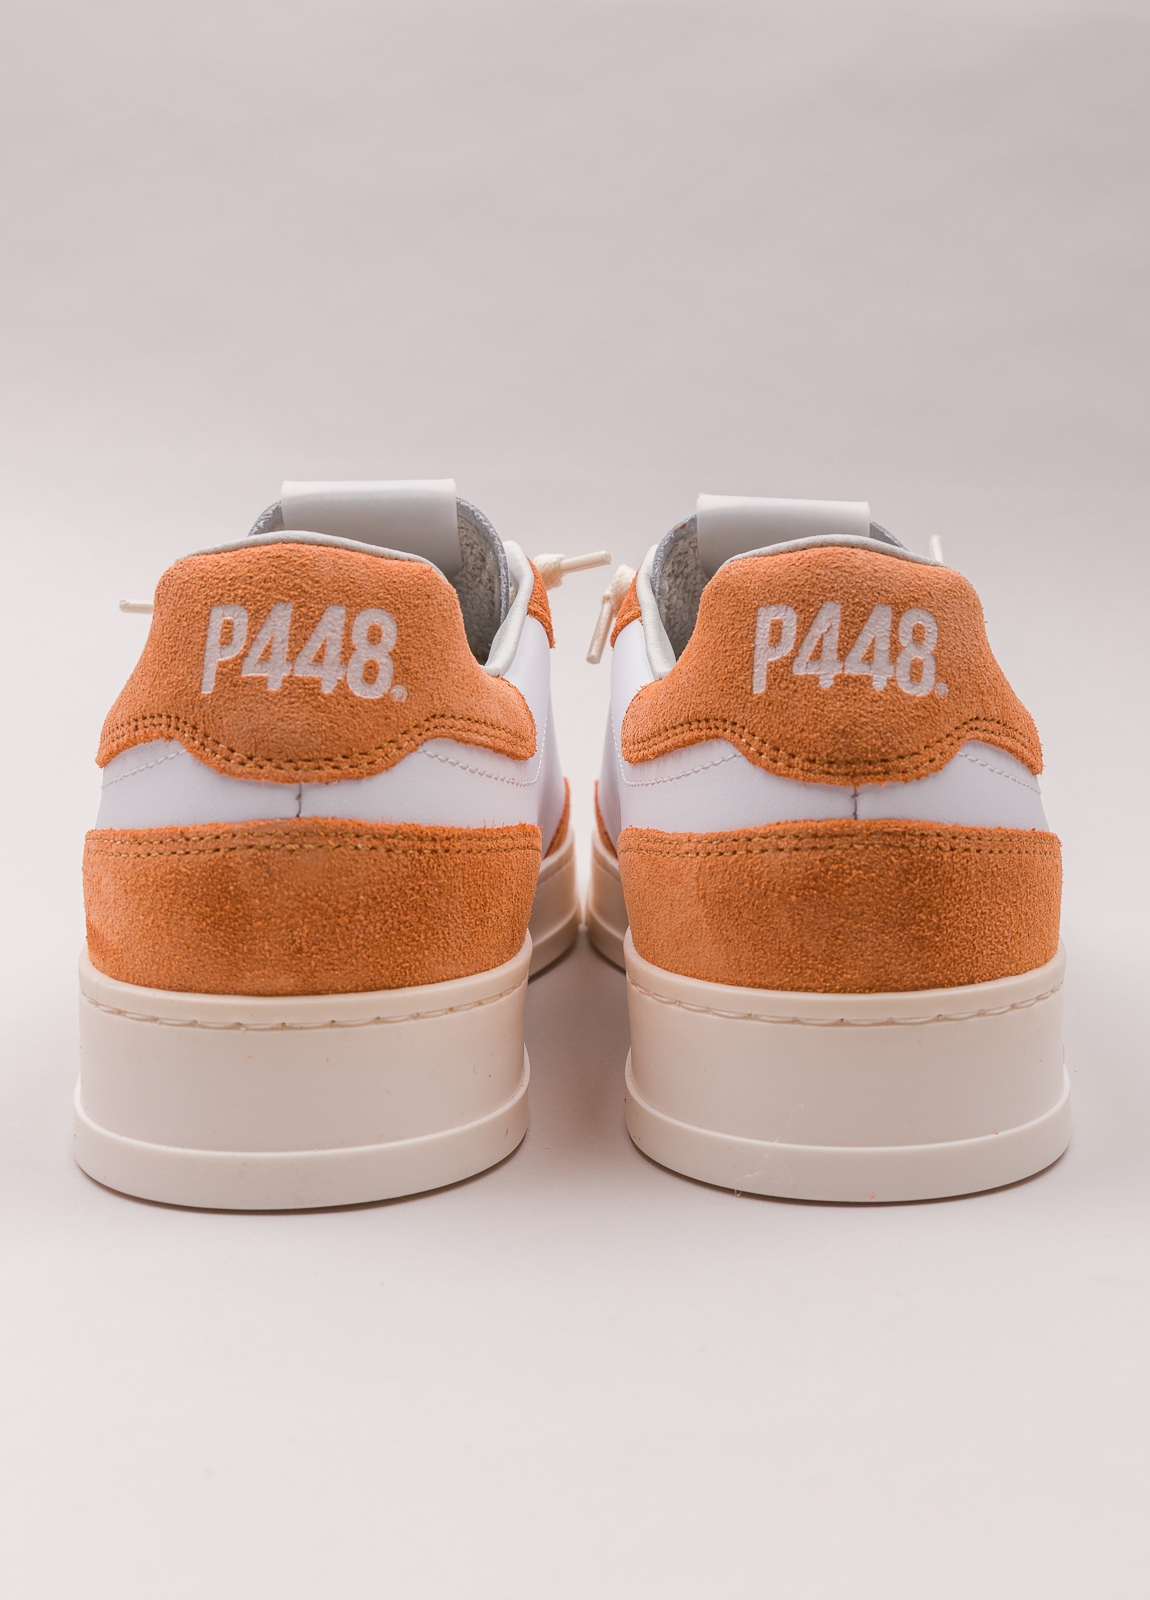 Sneaker P448 blanca y naranja - Ítem2